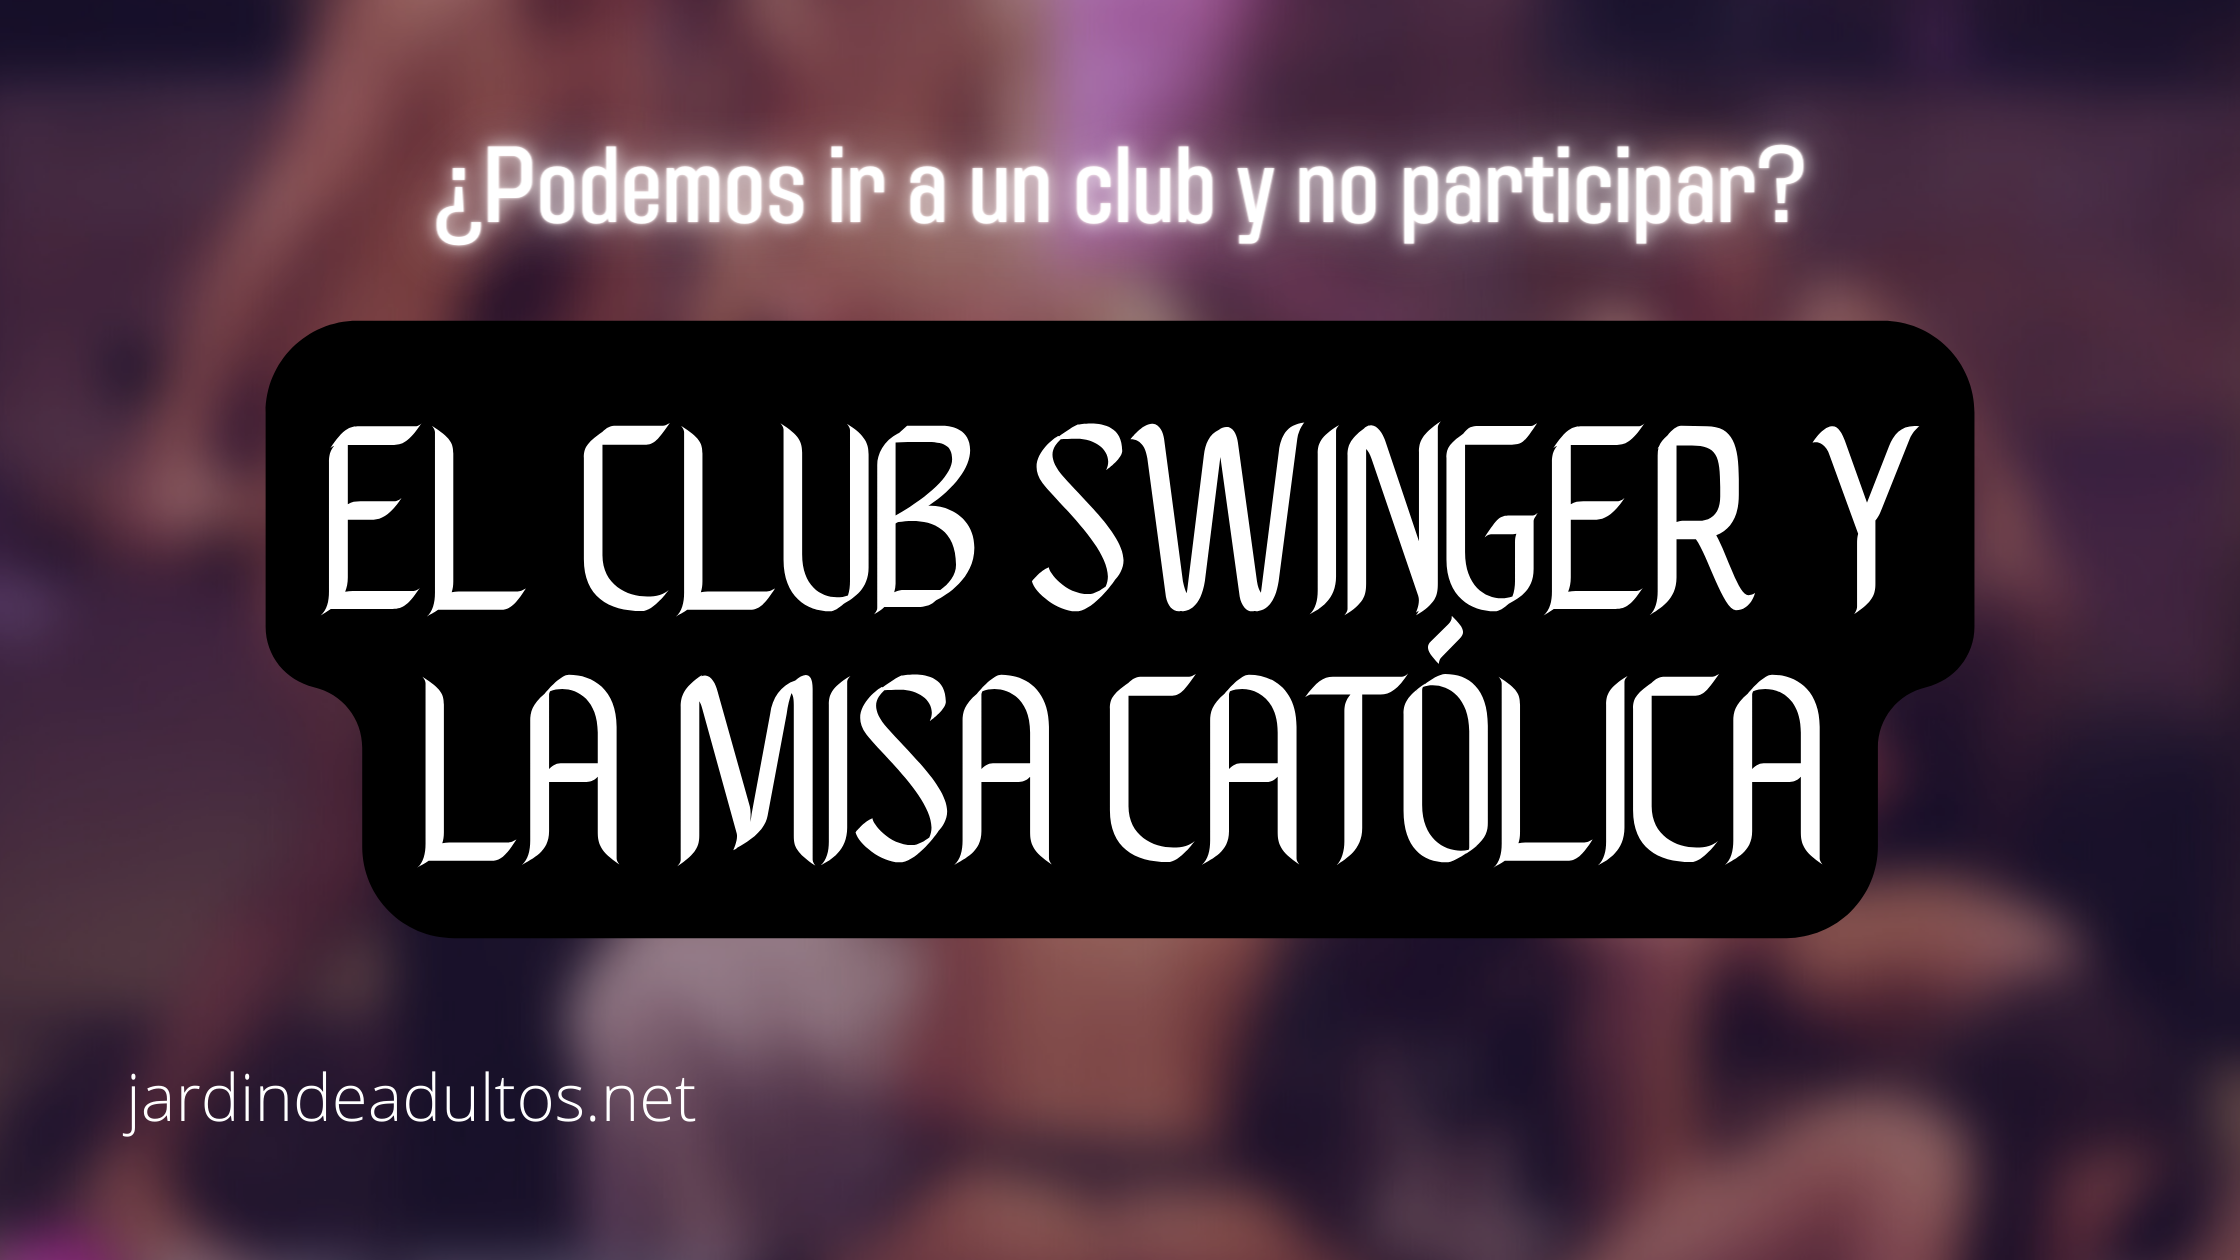 Podemos ir a un club swinger y no participar? foto foto